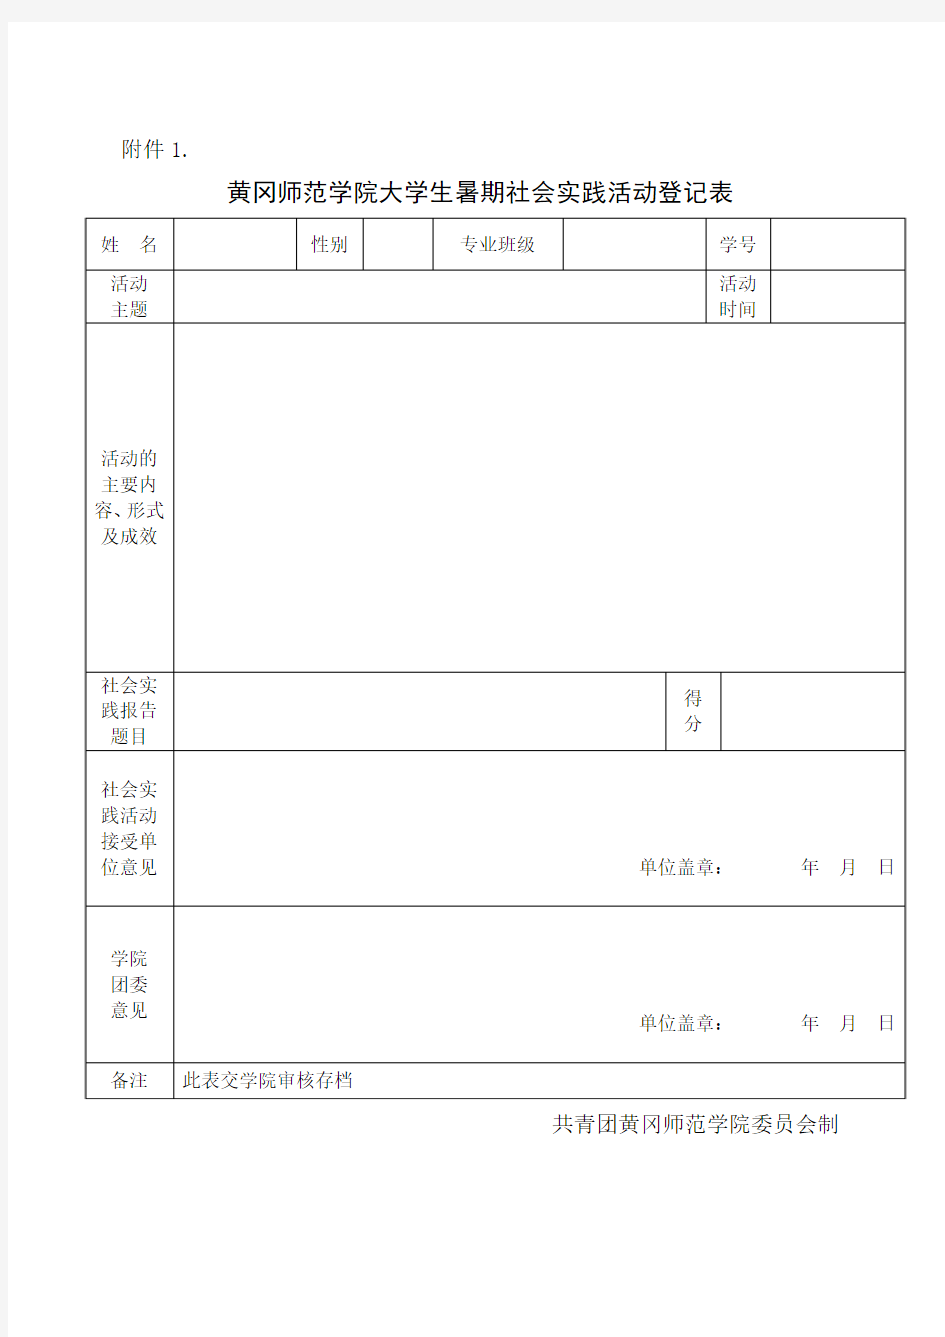 黄冈师范学院大学生暑期社会实践活动登记表